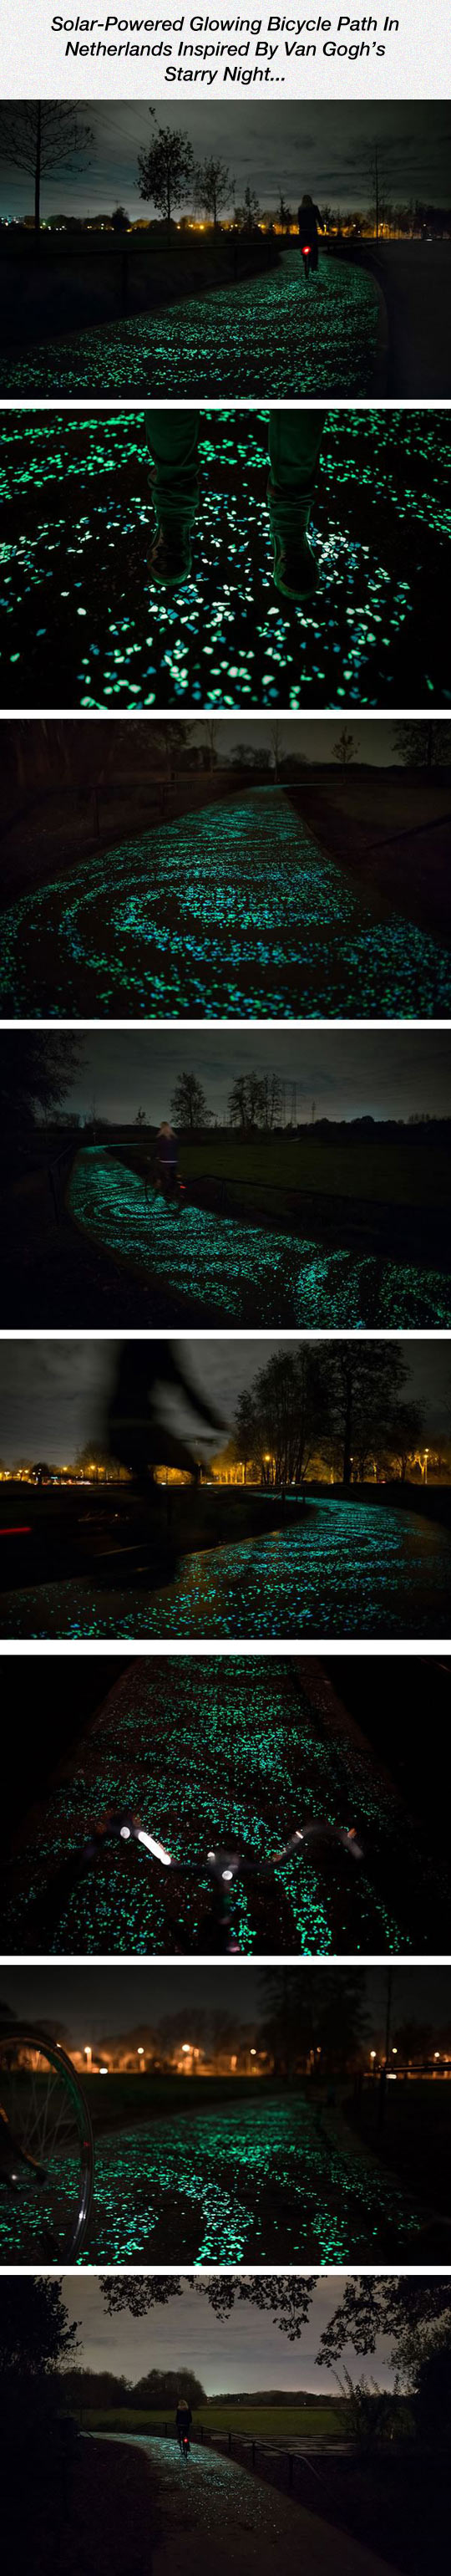 Beautiful Glowing Bicycle Path